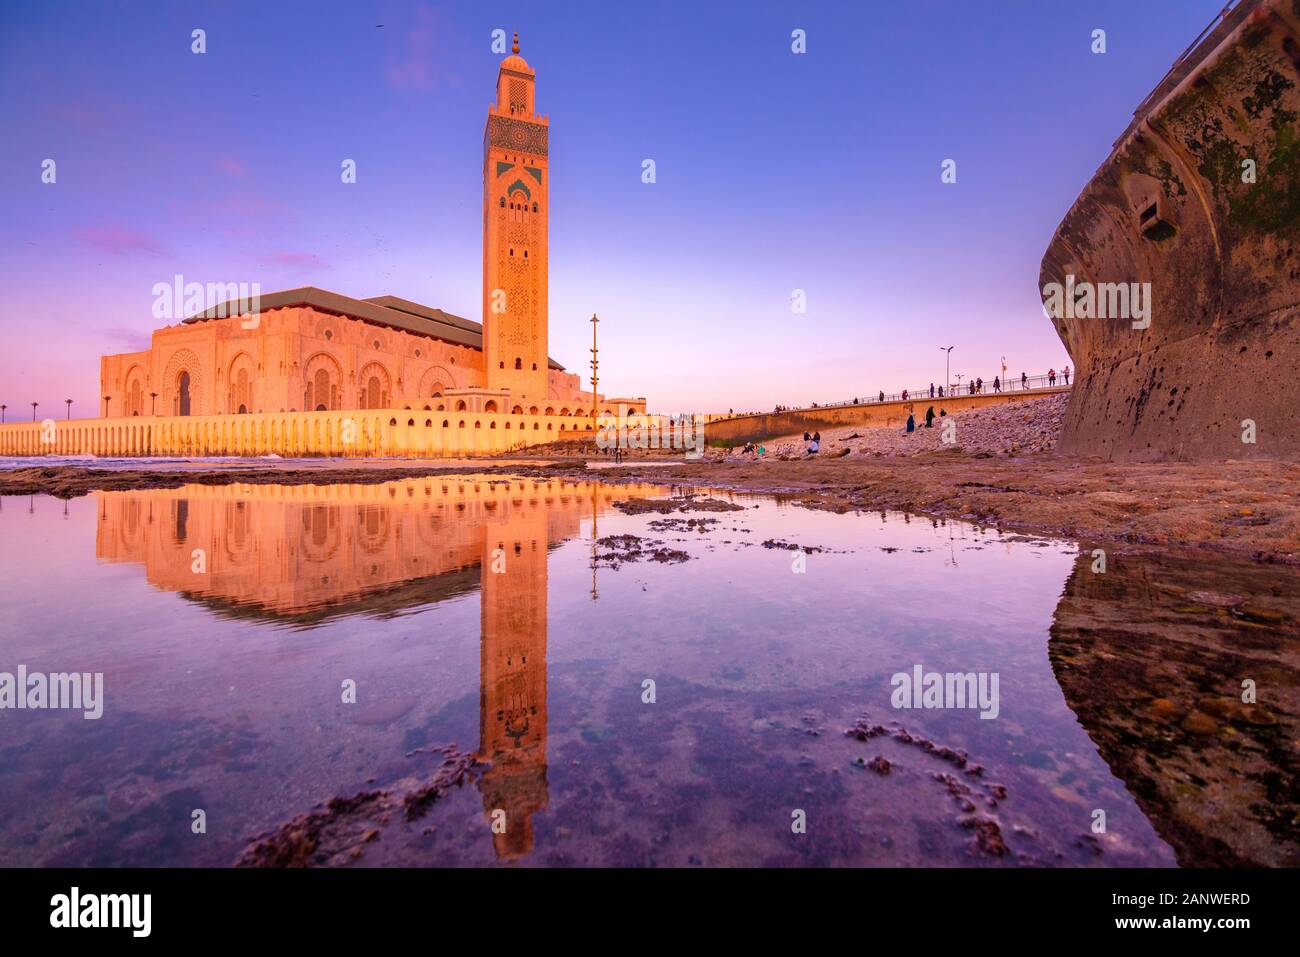 Die Hassan-II-Moschee ist eine Moschee in Casablanca, Marokko. Es ist die größte Moschee in Marokko mit dem höchsten Minarett der Welt. Stockfoto